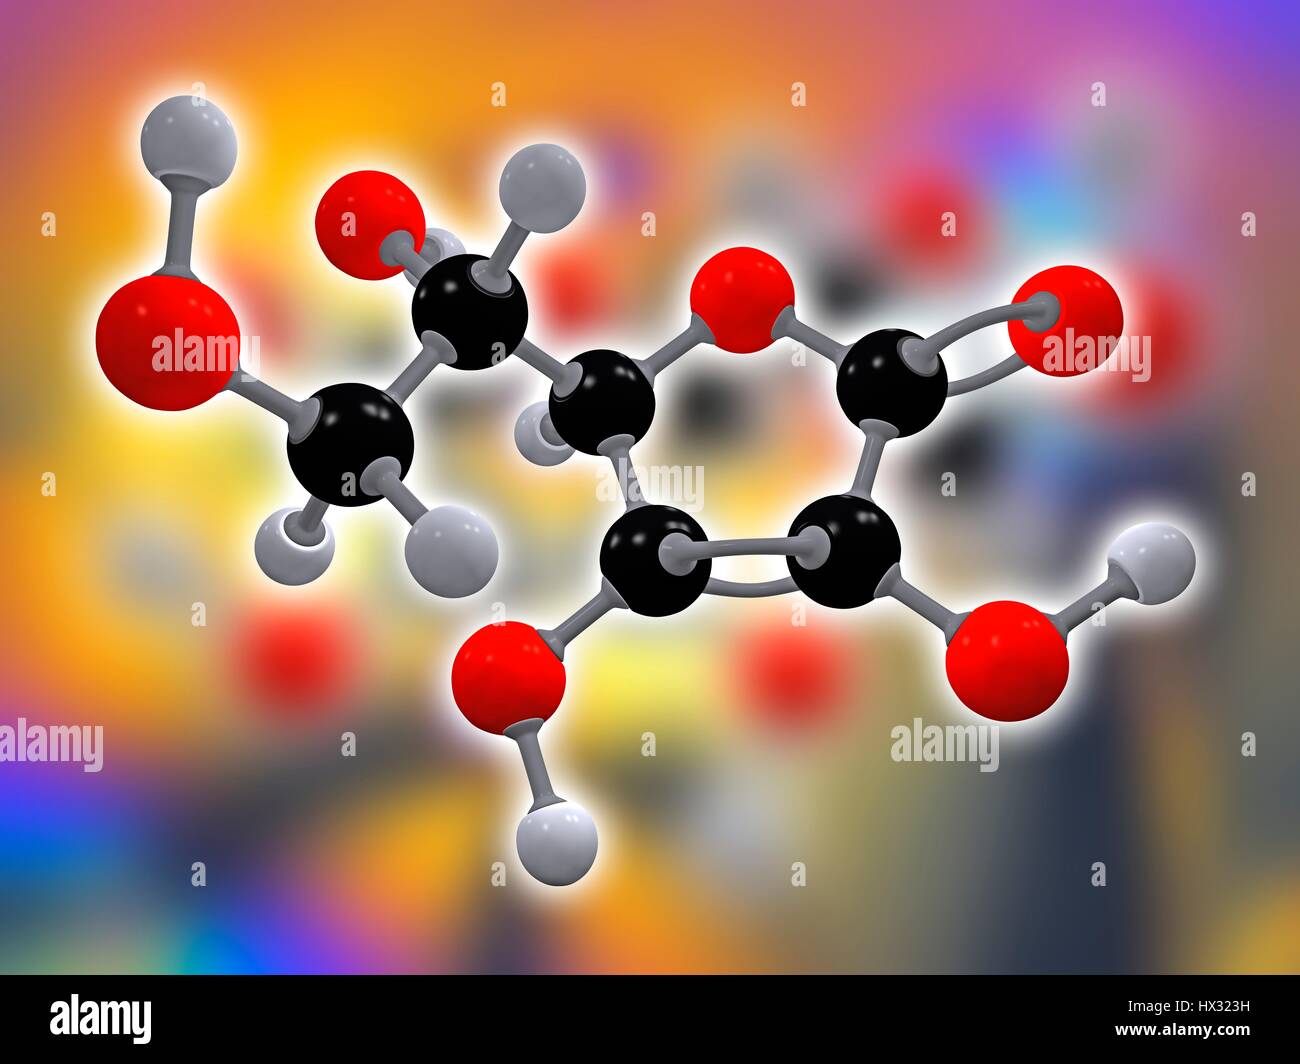 La vitamina C. modelo molecular de ácido ascórbico (C6.H8.O6), también conocida como la vitamina C. Esta vitamina es necesaria para proteger el cuerpo contra el estrés oxidativo. Los átomos son representados como esferas y están codificados por colores: carbono (negro), hidrógeno (gris) y oxígeno (rojo) Foto de stock